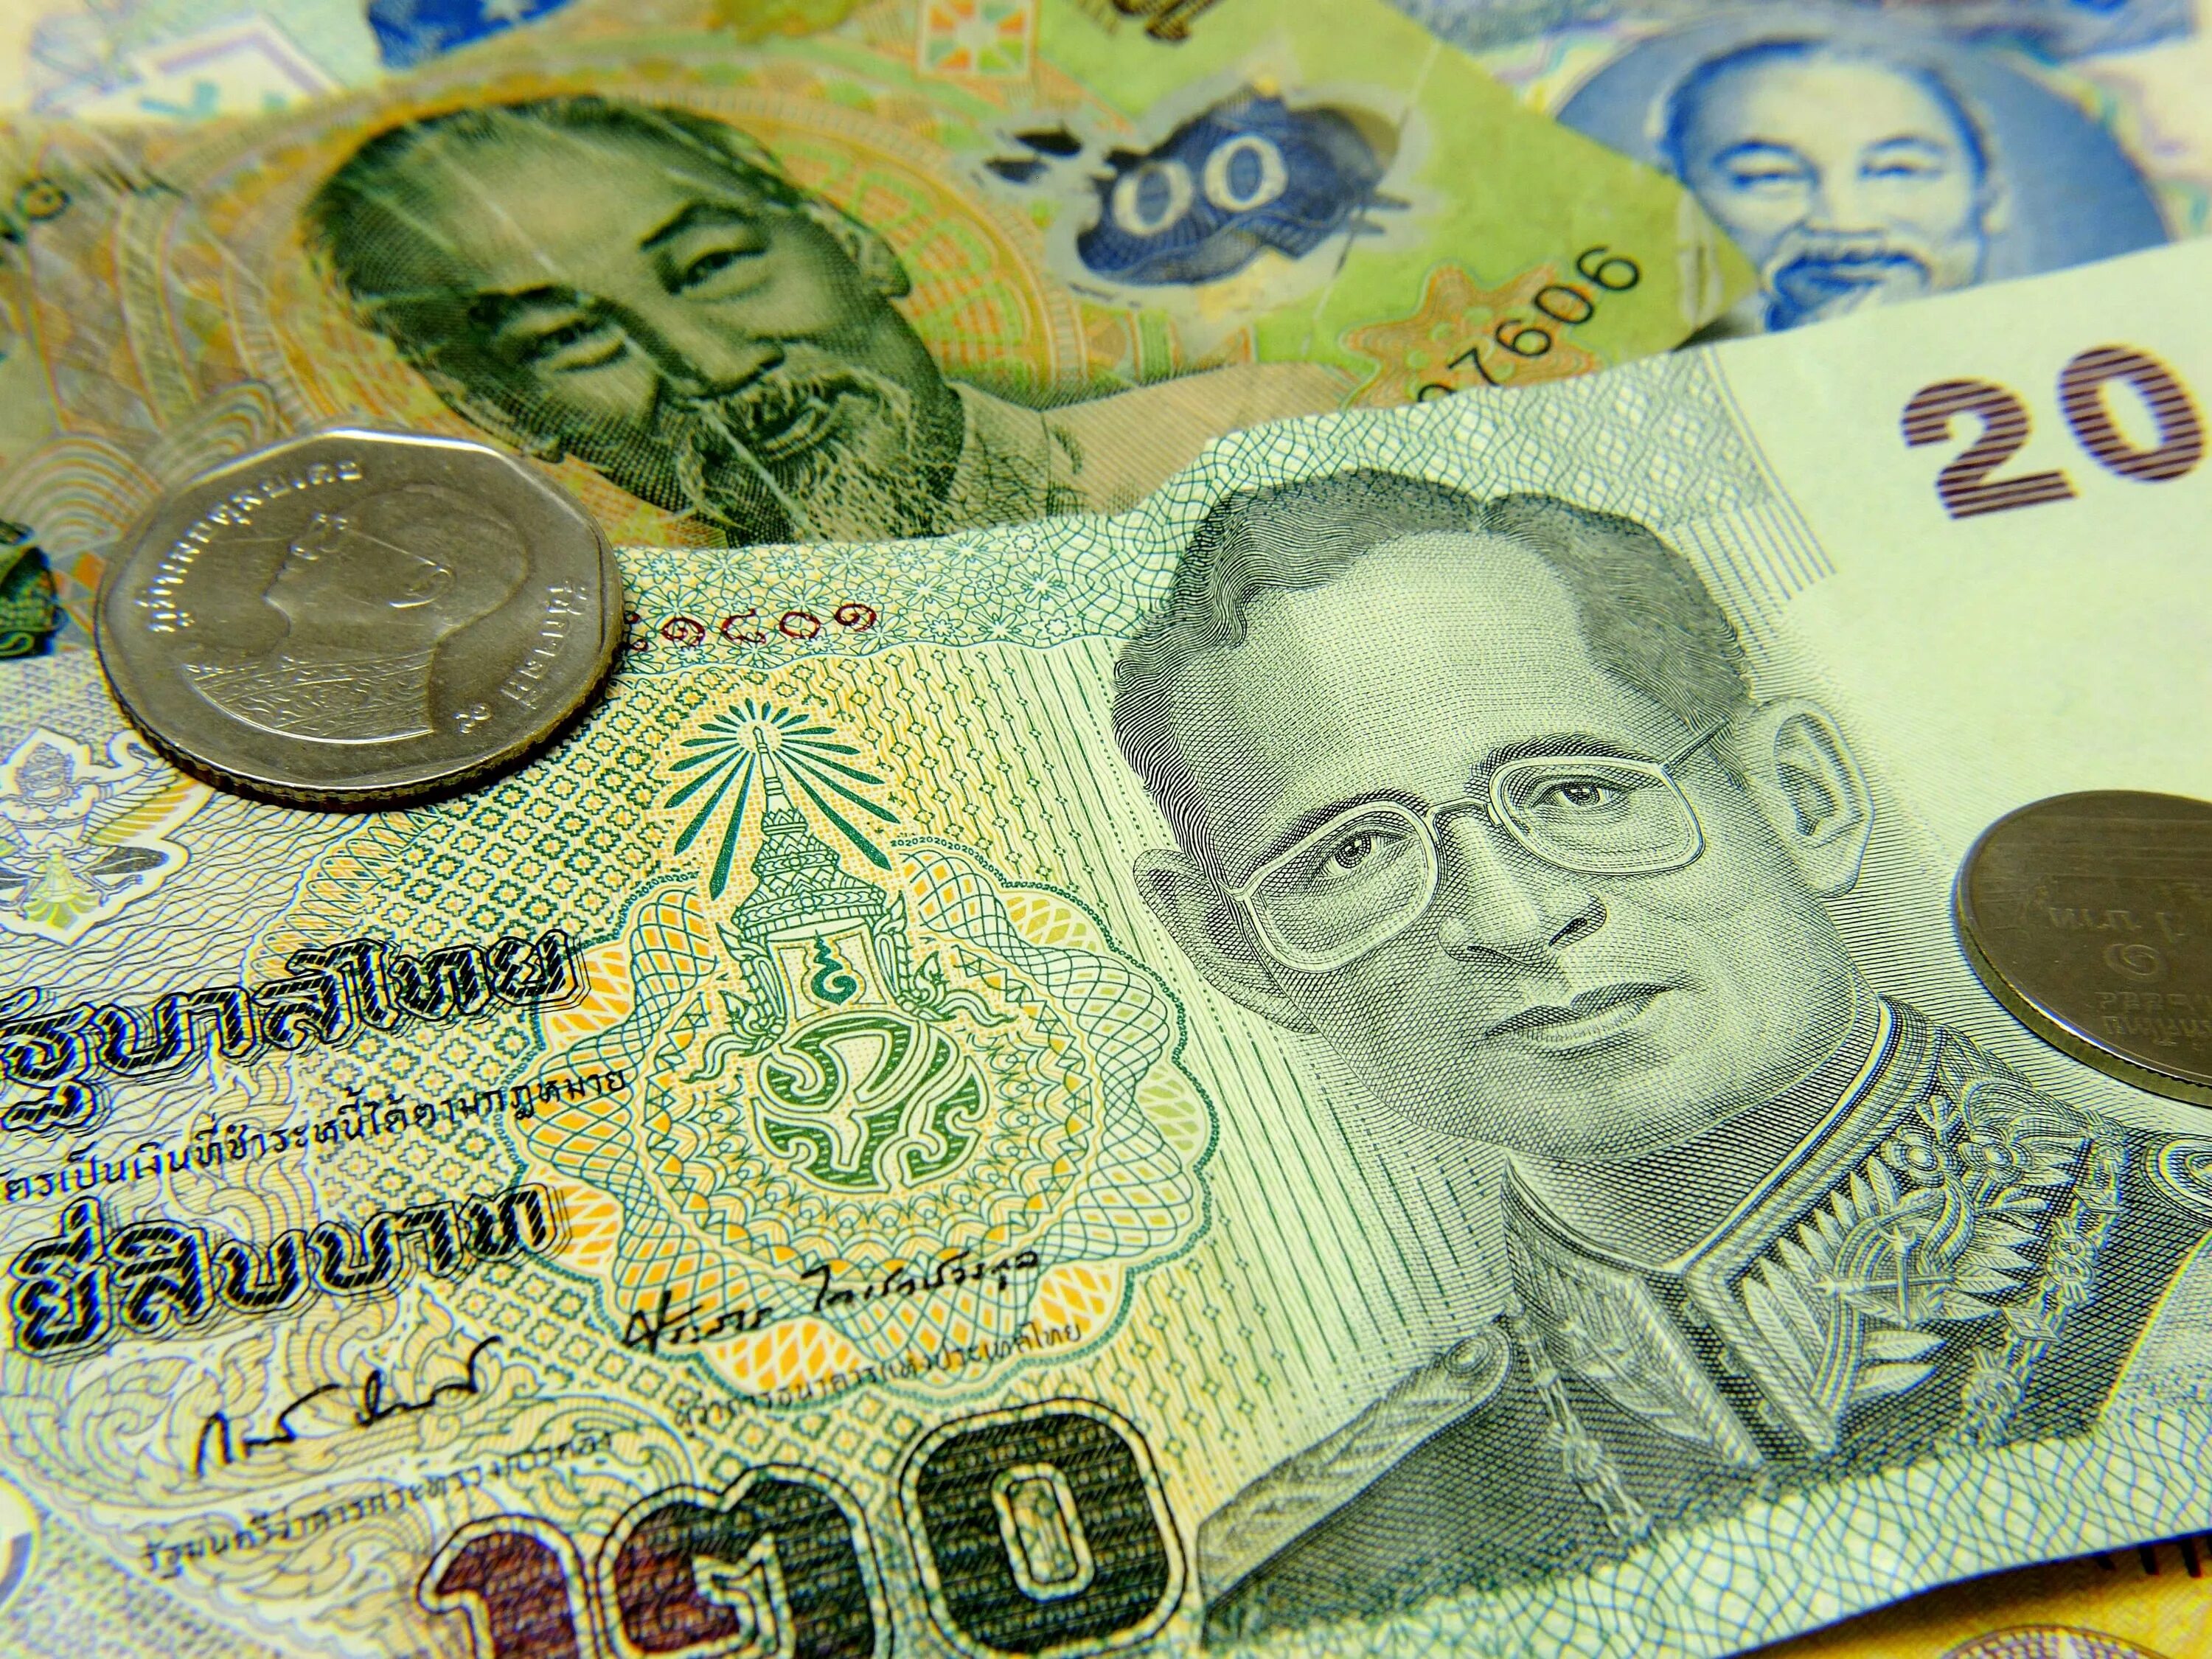 Таиланд валюта бат. Тайланд валюта тайский бат. Таиландский бат купюры. 100 Бат Тайланд.